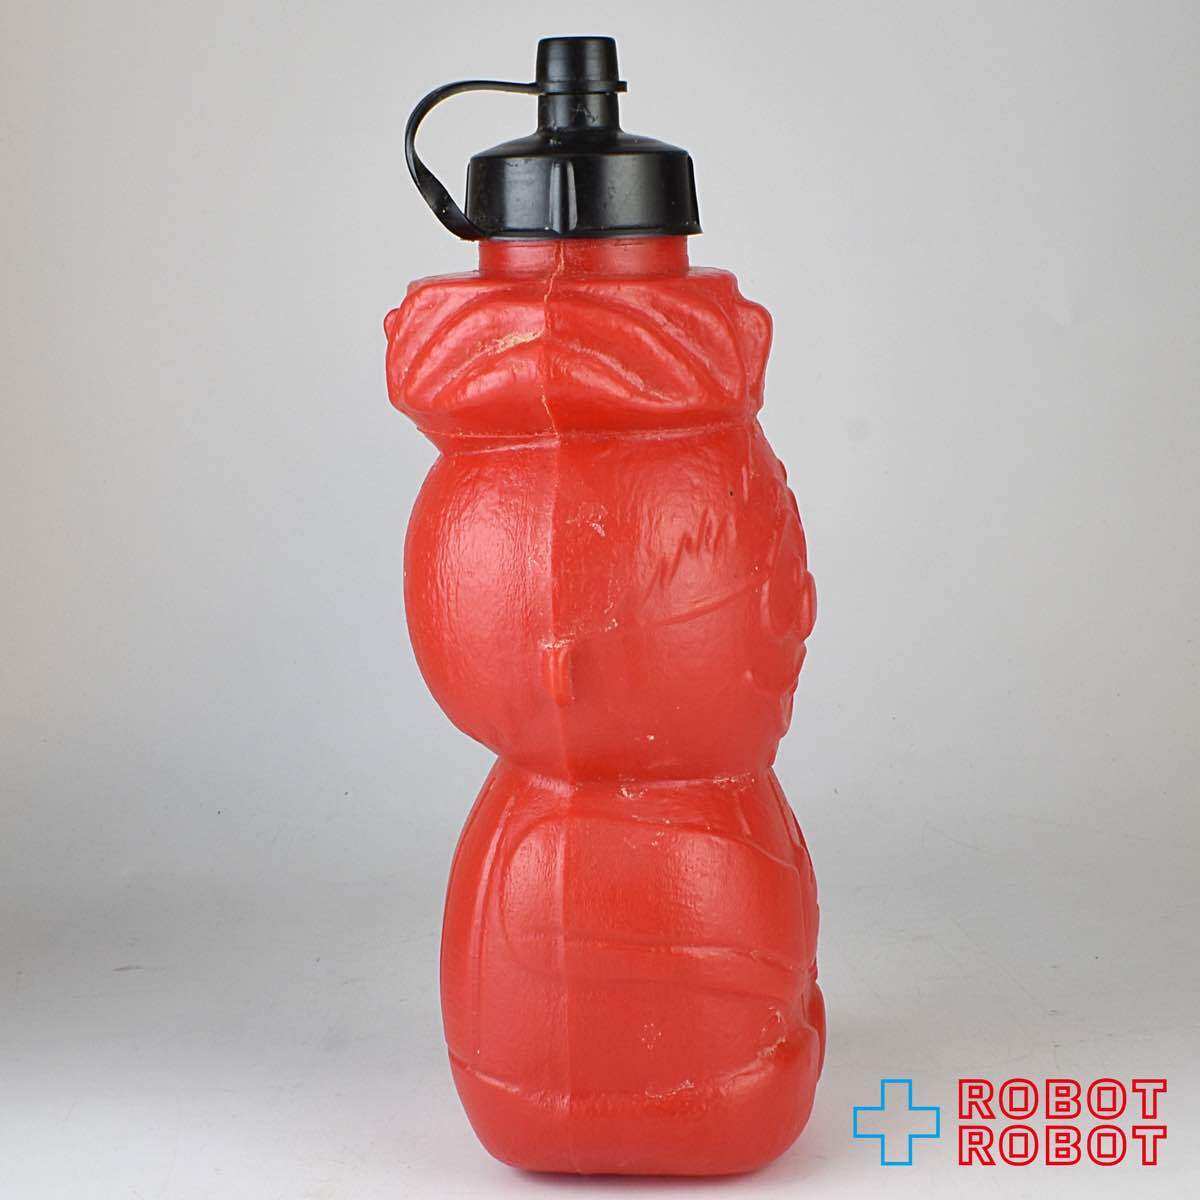 ハワイアンパンチ パンチー プラスチック ボトル フィギュア 赤